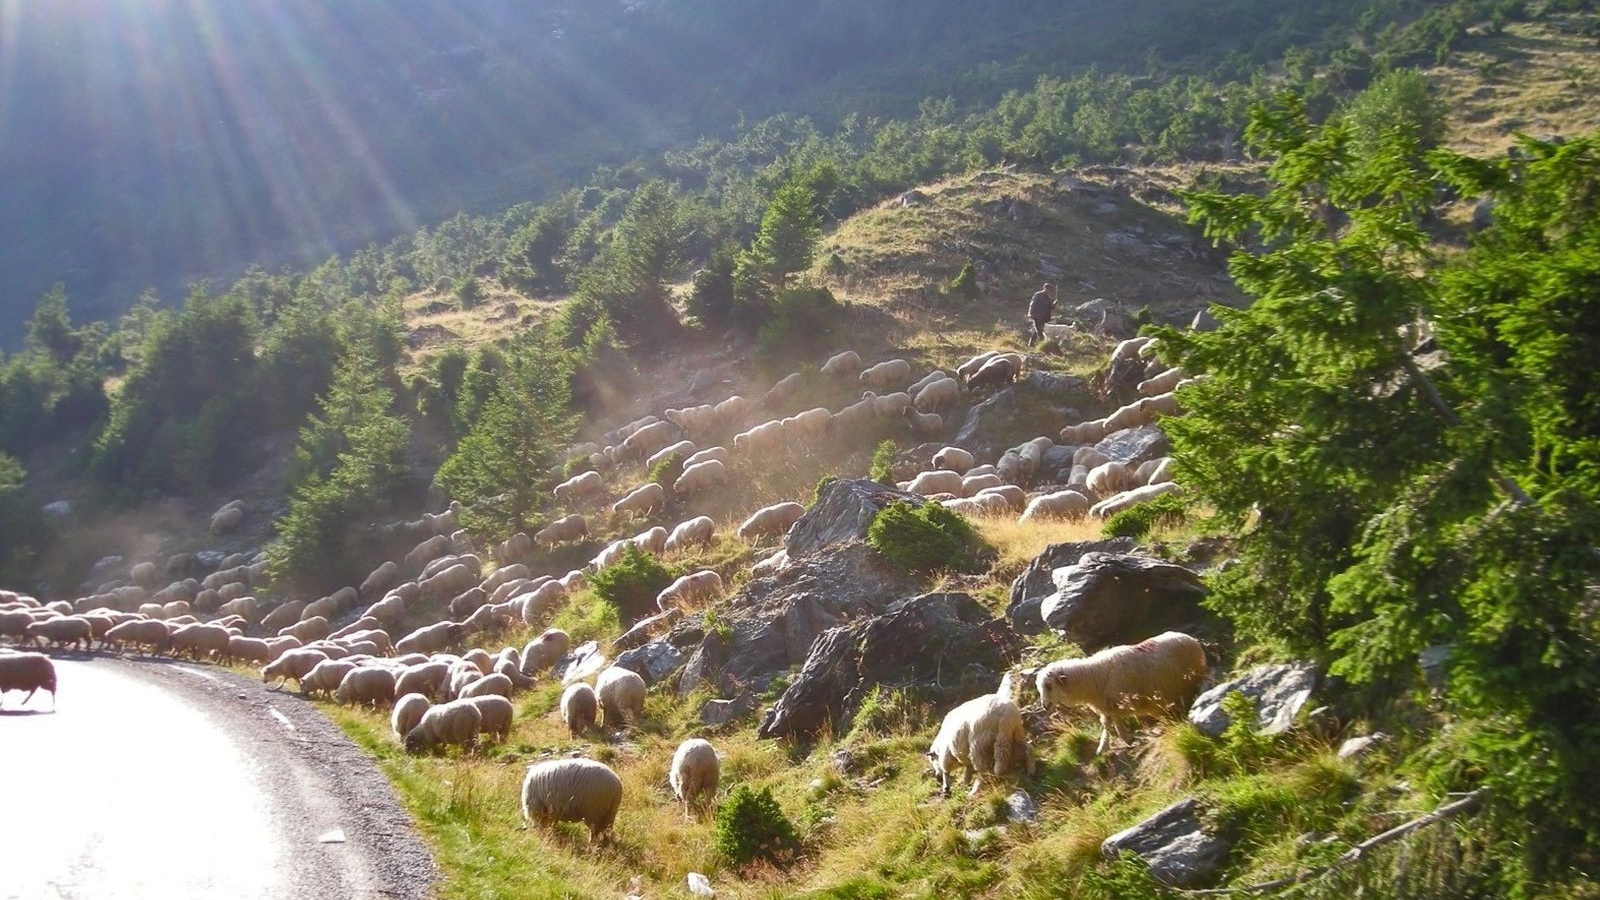 Стадо овец переходит дорогу